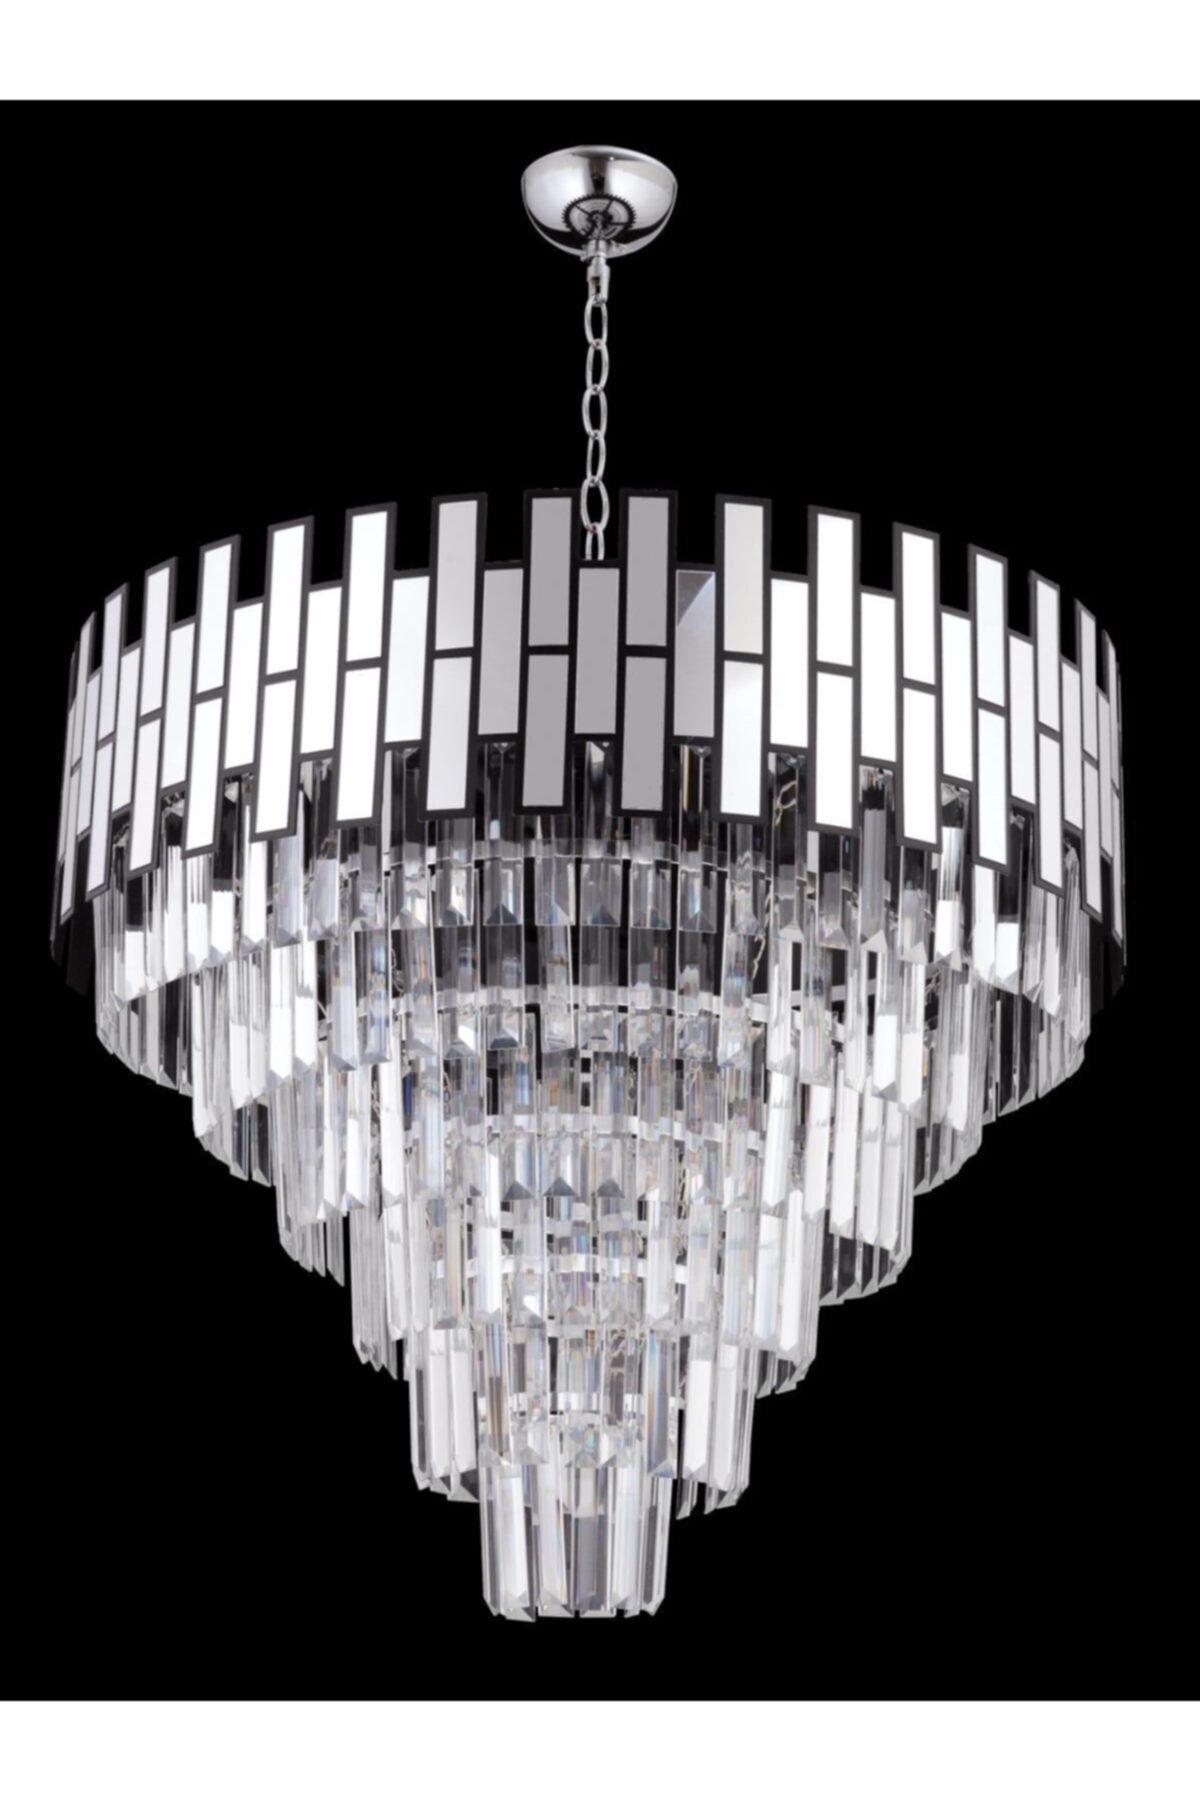 Crystal Palace Kristal Taşlı Lüks Lux Salon Avizesi - 60cm Gümüş Cam Taş Avize - Yuvarlak Model Yemek Odası Avizesi